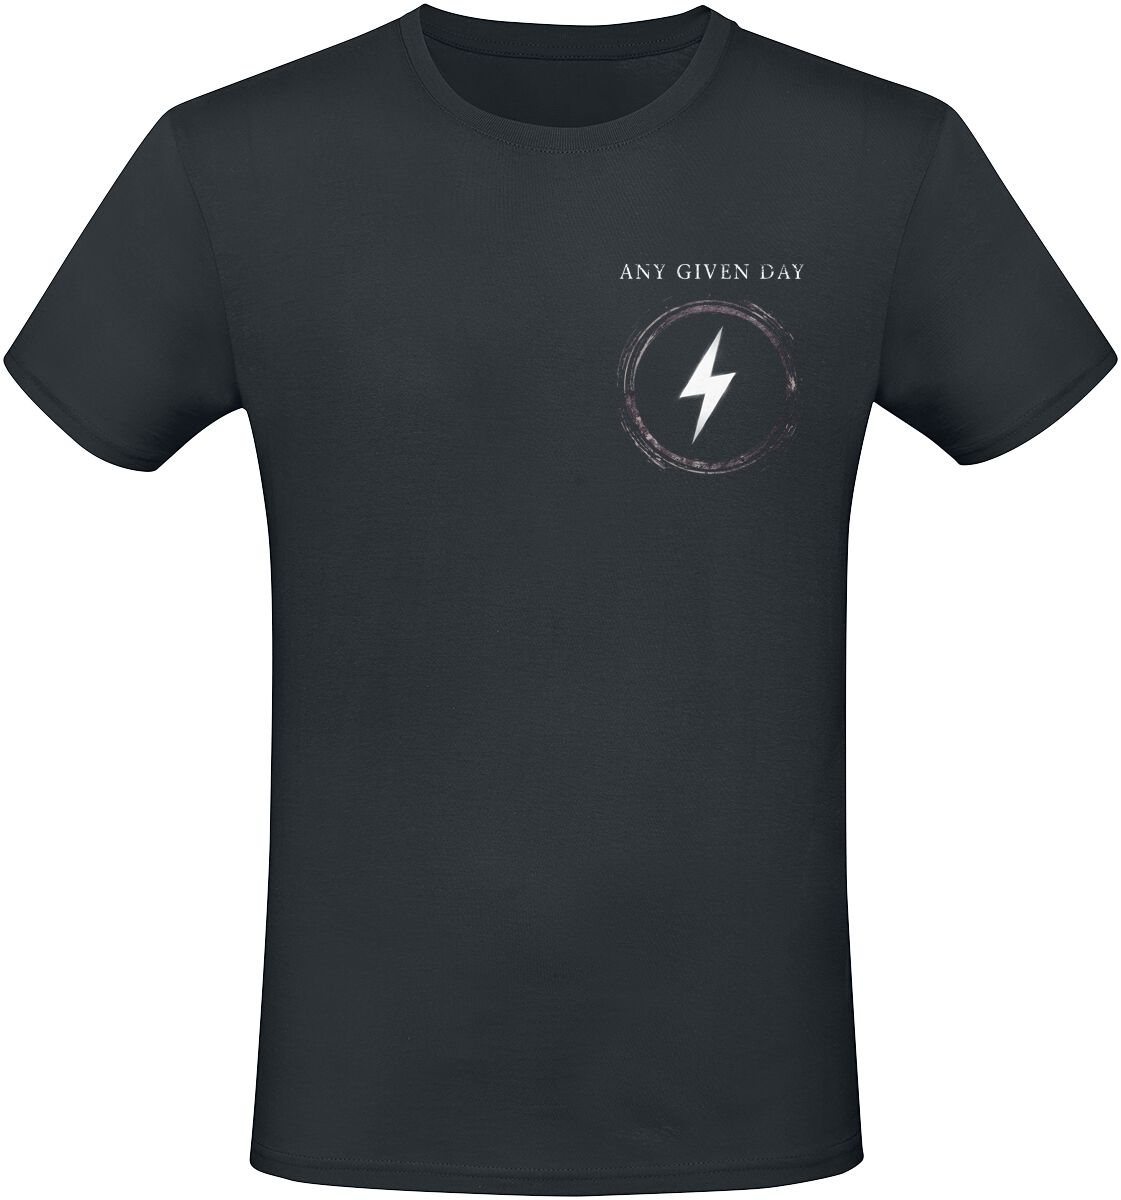 Any Given Day T-Shirt - Overpower - S bis L - für Männer - Größe M - schwarz  - EMP exklusives Merchandise!